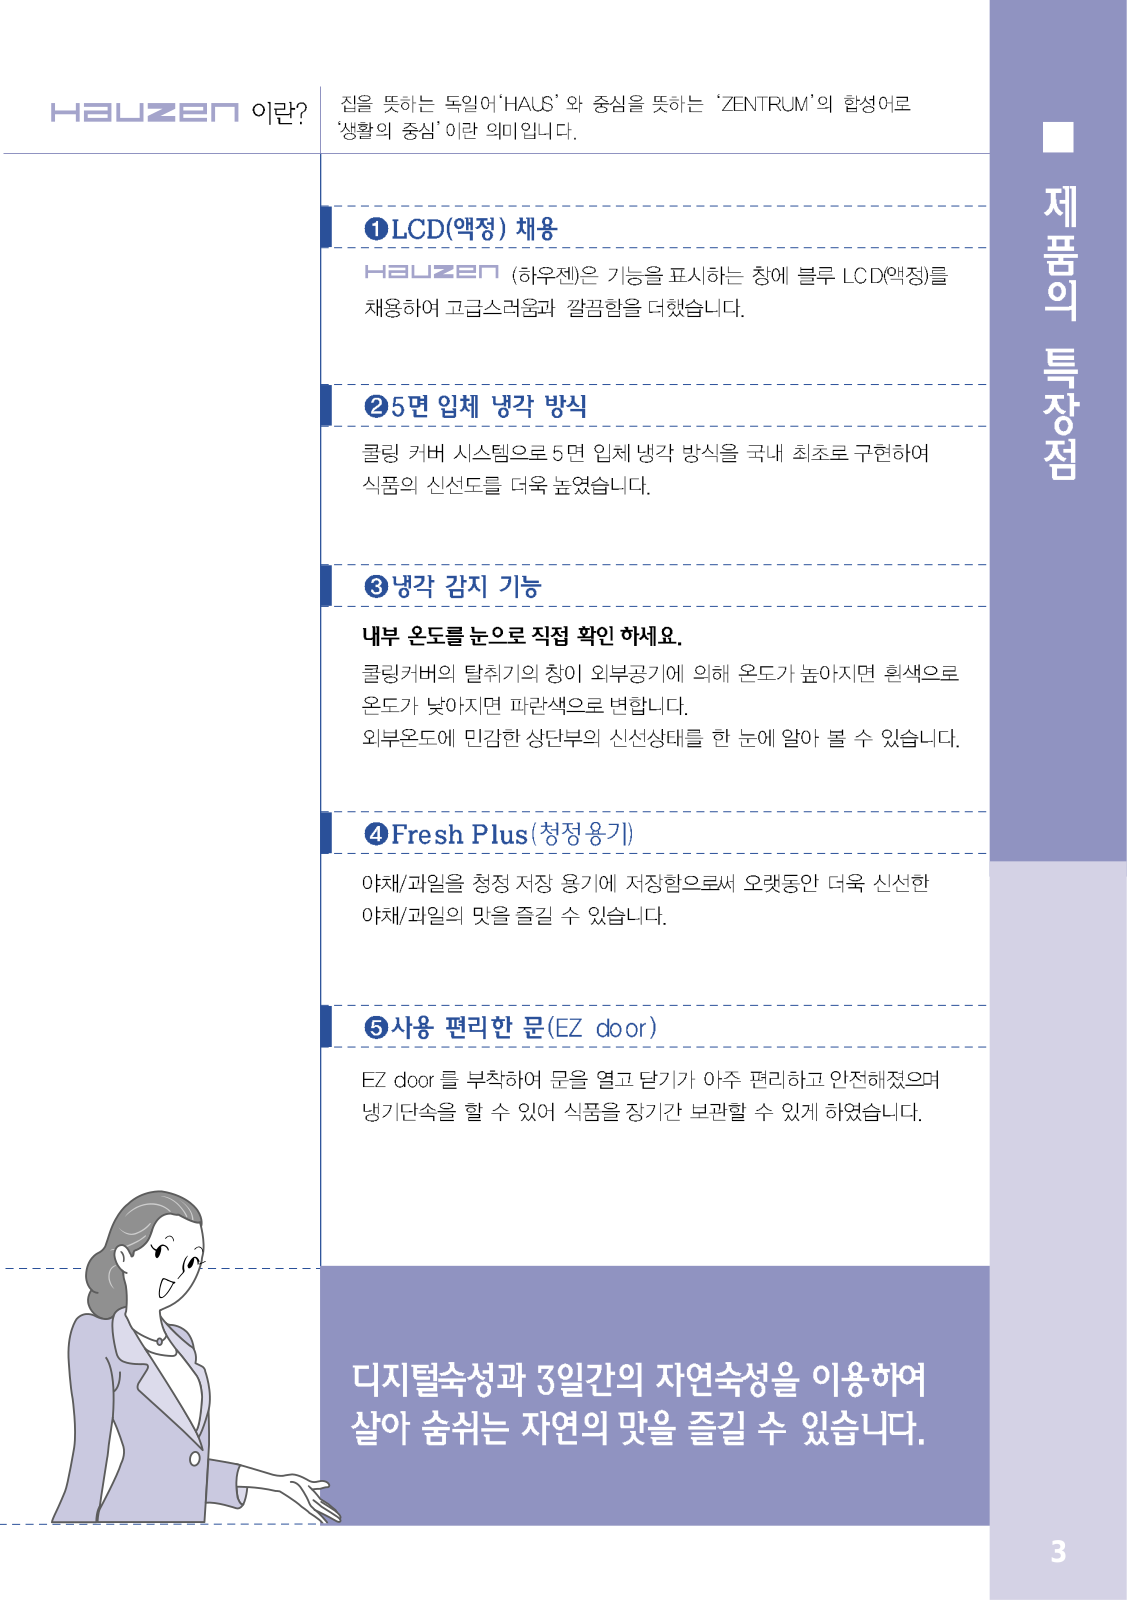 Samsung HNR2013Q, HNR2020Q, HNR2020R Manual